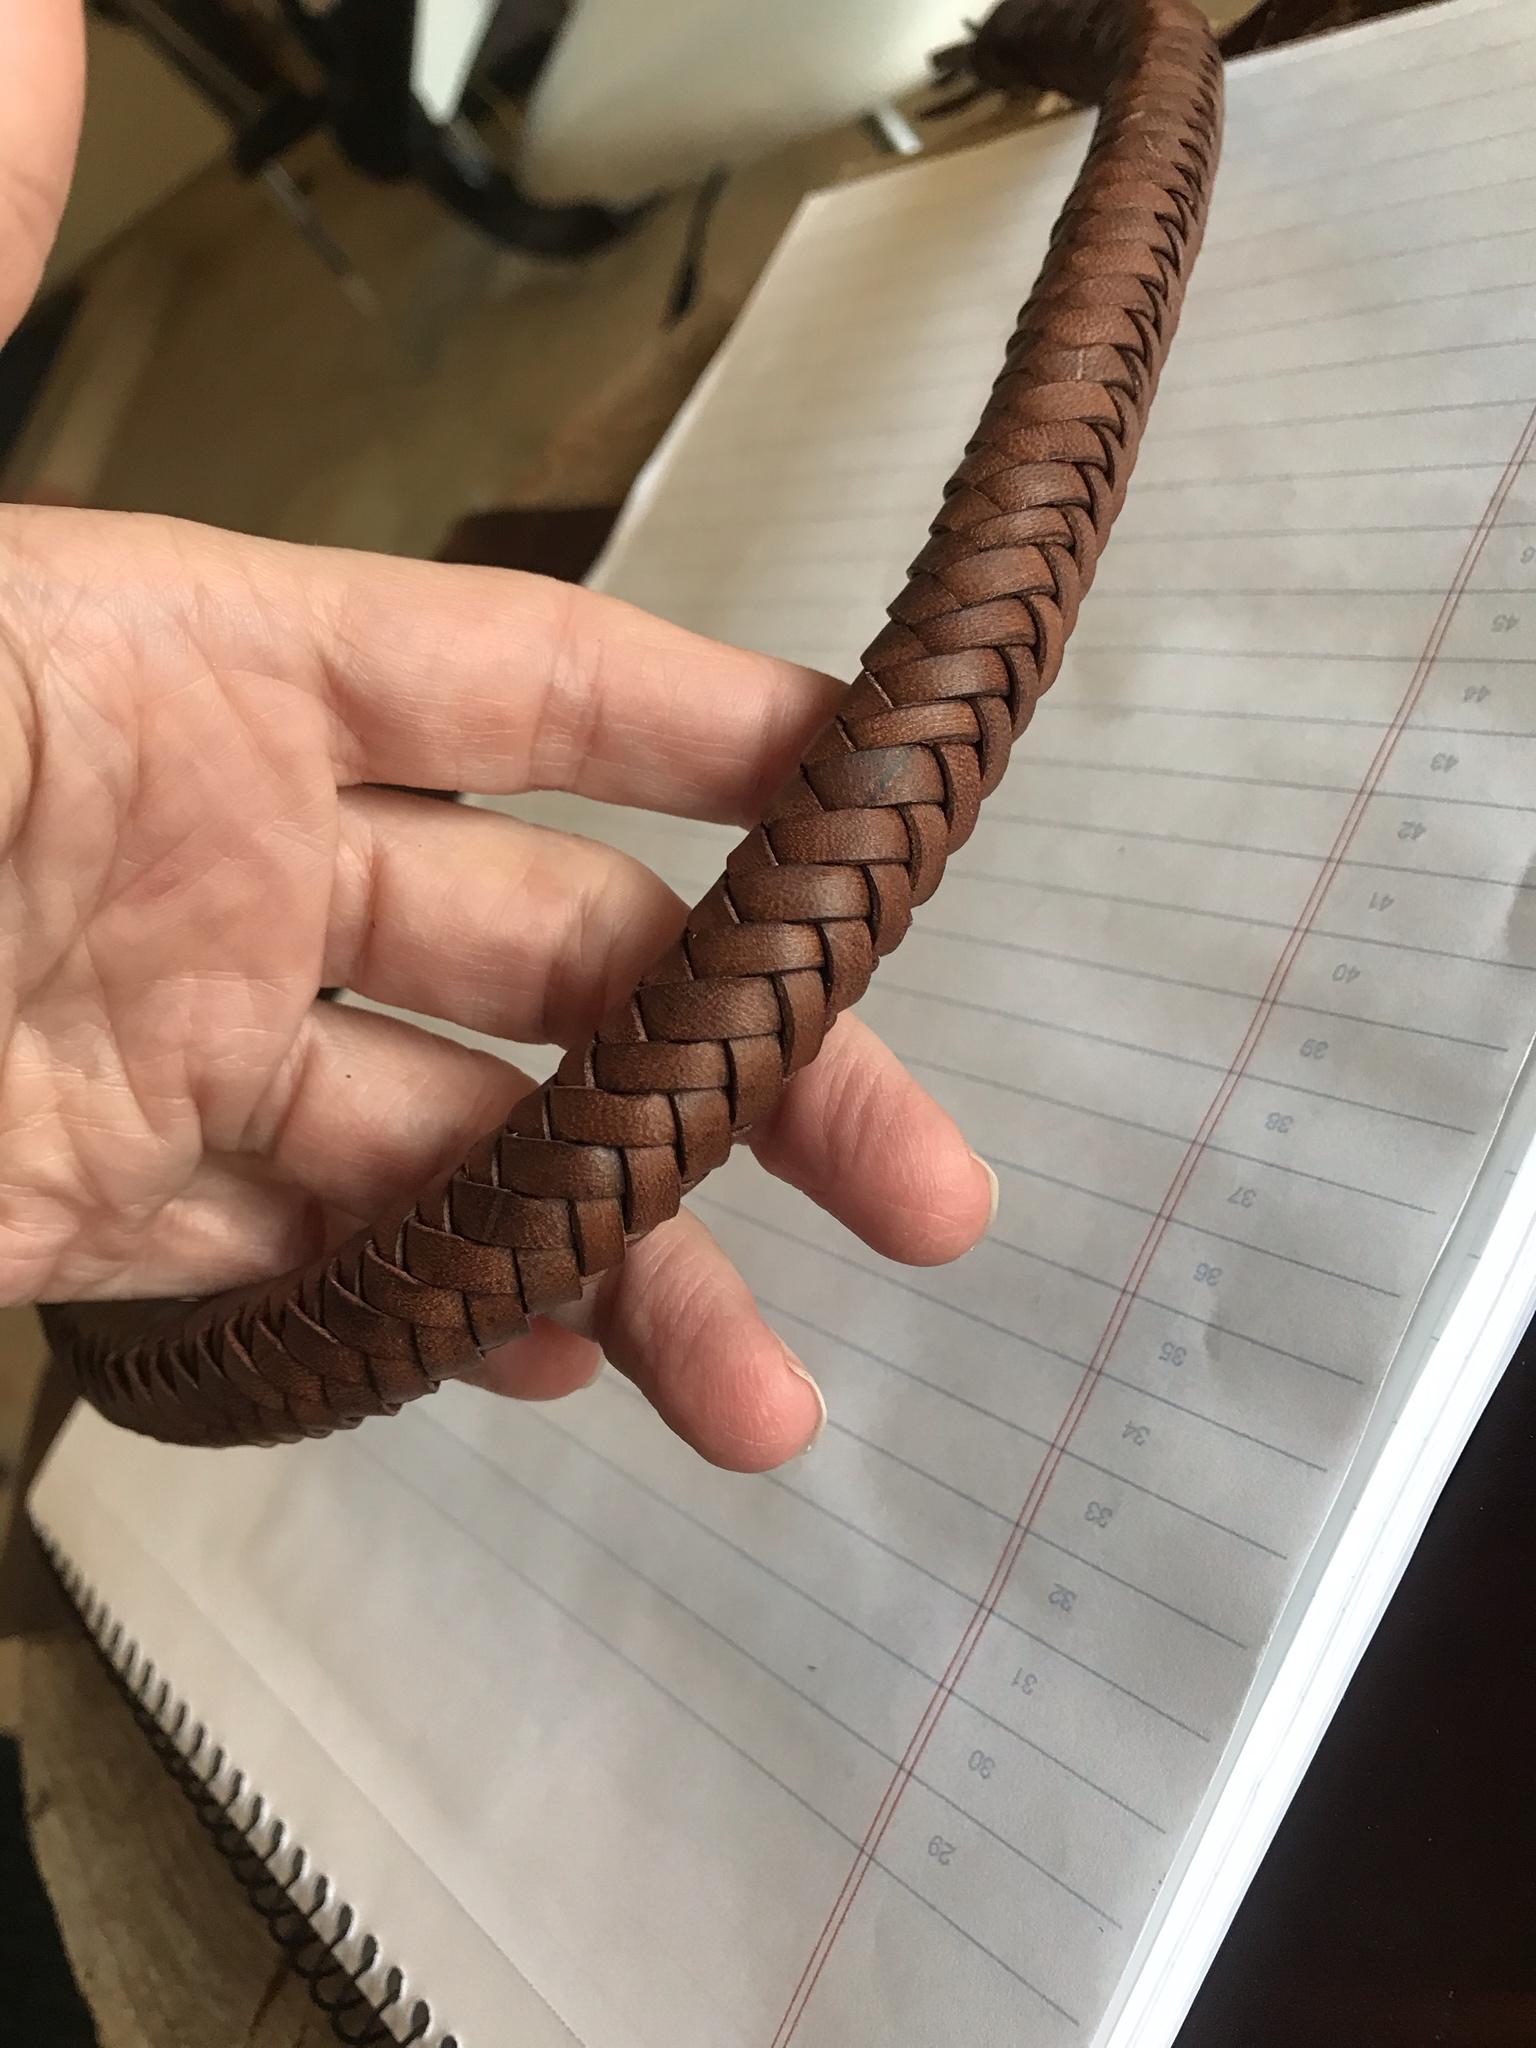 leather braiding techniques